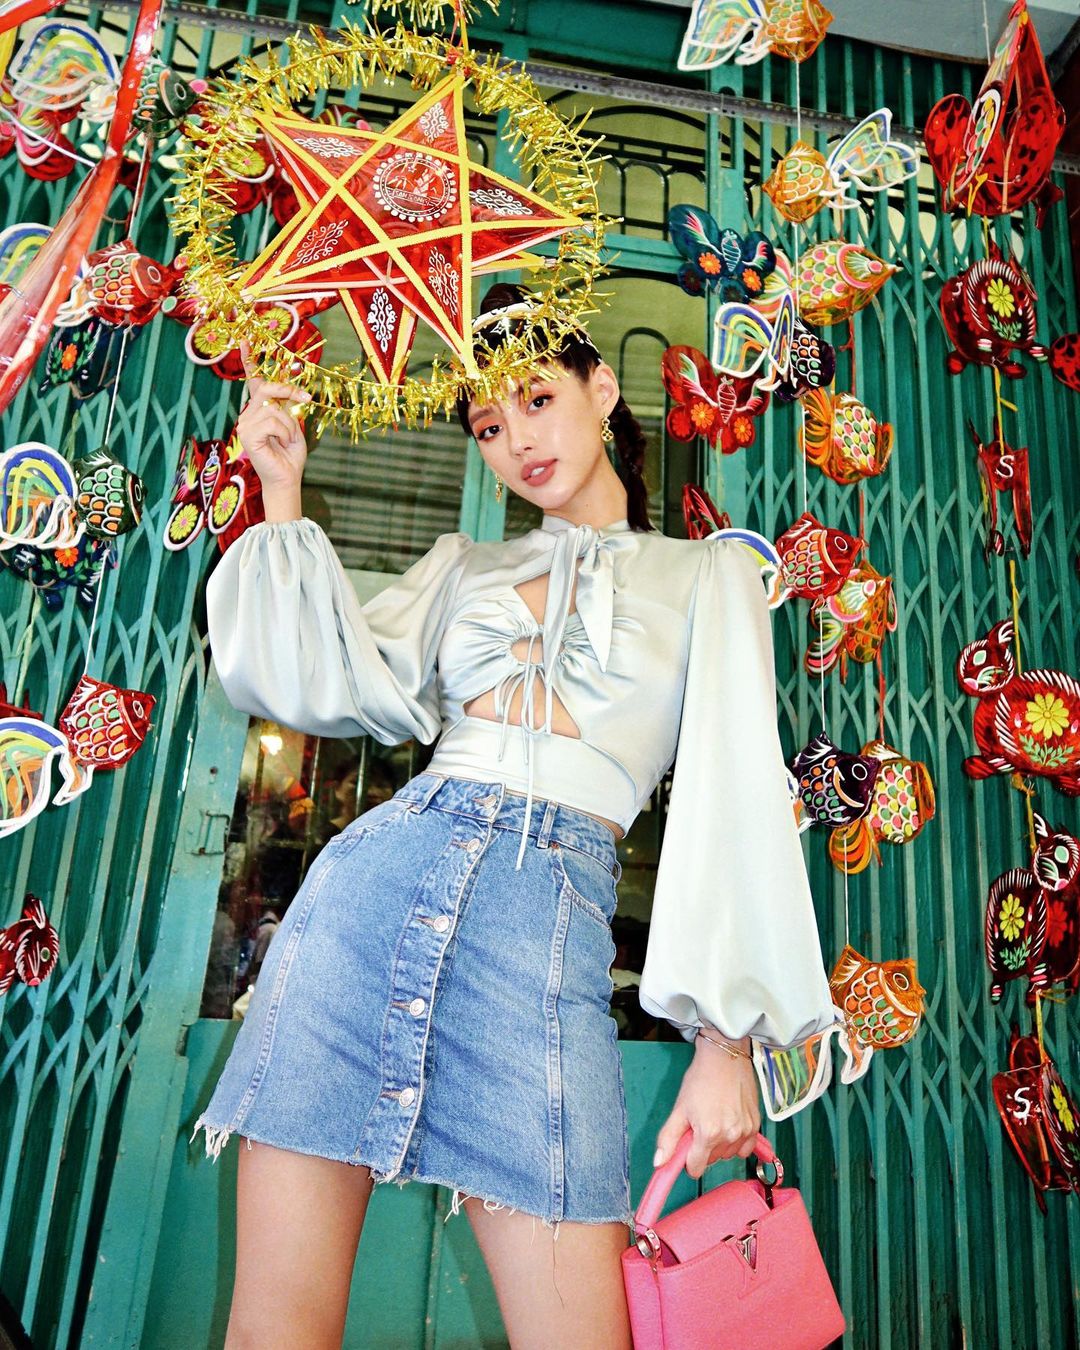 Người mẫu Khánh Linh sexy trong chiếc áo tay phồng màu pastel cùng chiếc chân váy jeans ngắn. Chiếc áo nổi bật với thiết kế khoét ngực, phồng lớn về phía cổ tay. Nguồn: klinhnd